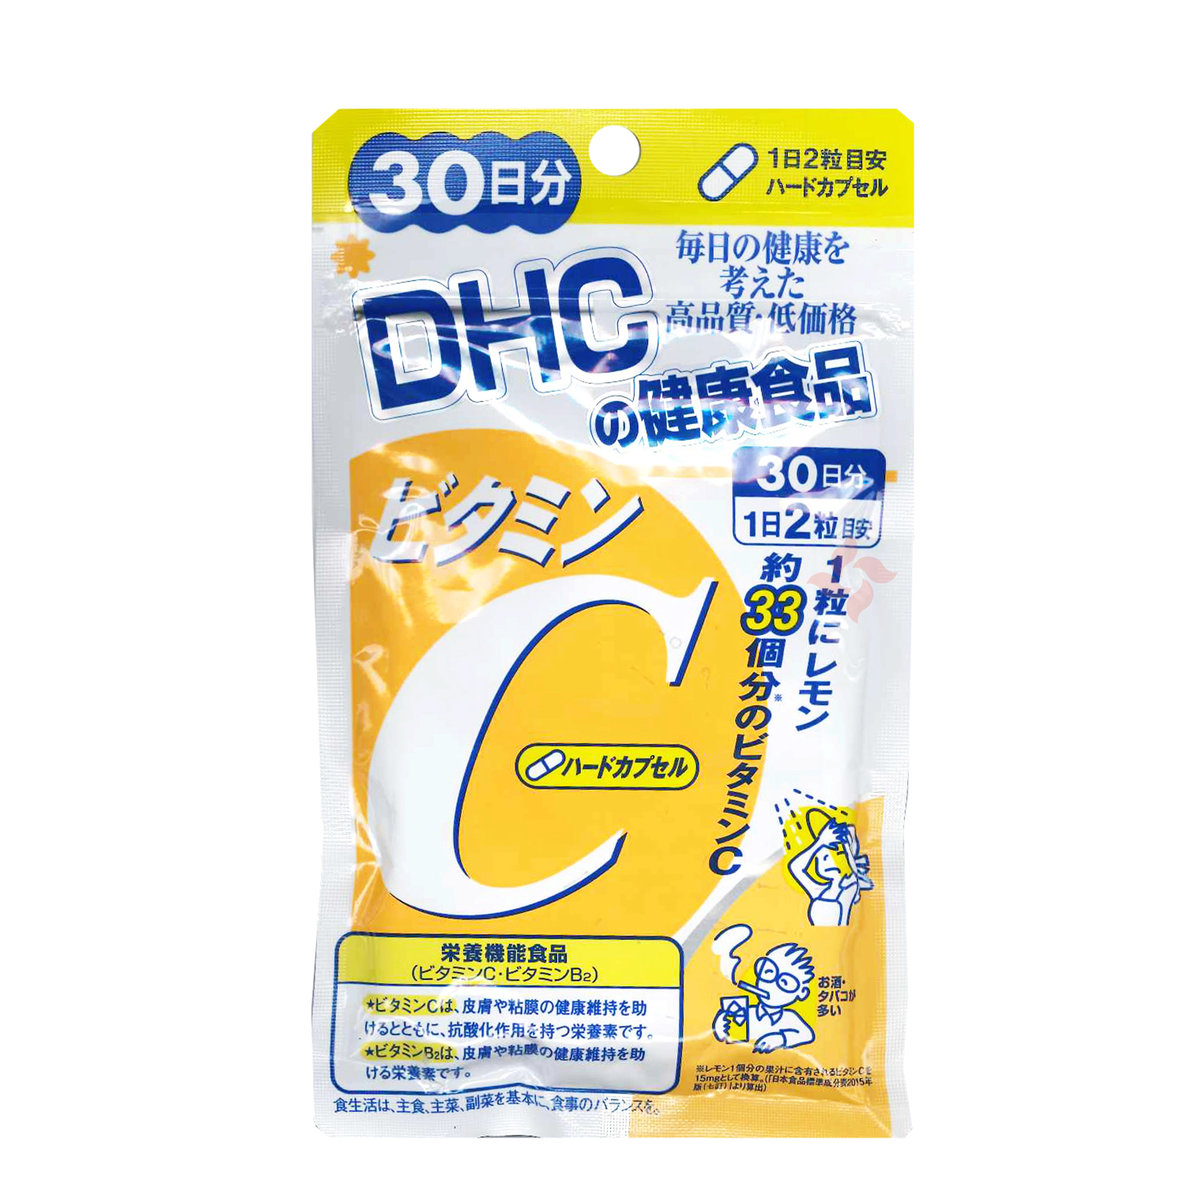 Combo Viên Uống DHC Vitamin C Hard Capsule 60 Viên Và Viên Uống DHC Collagen Đẹp Da